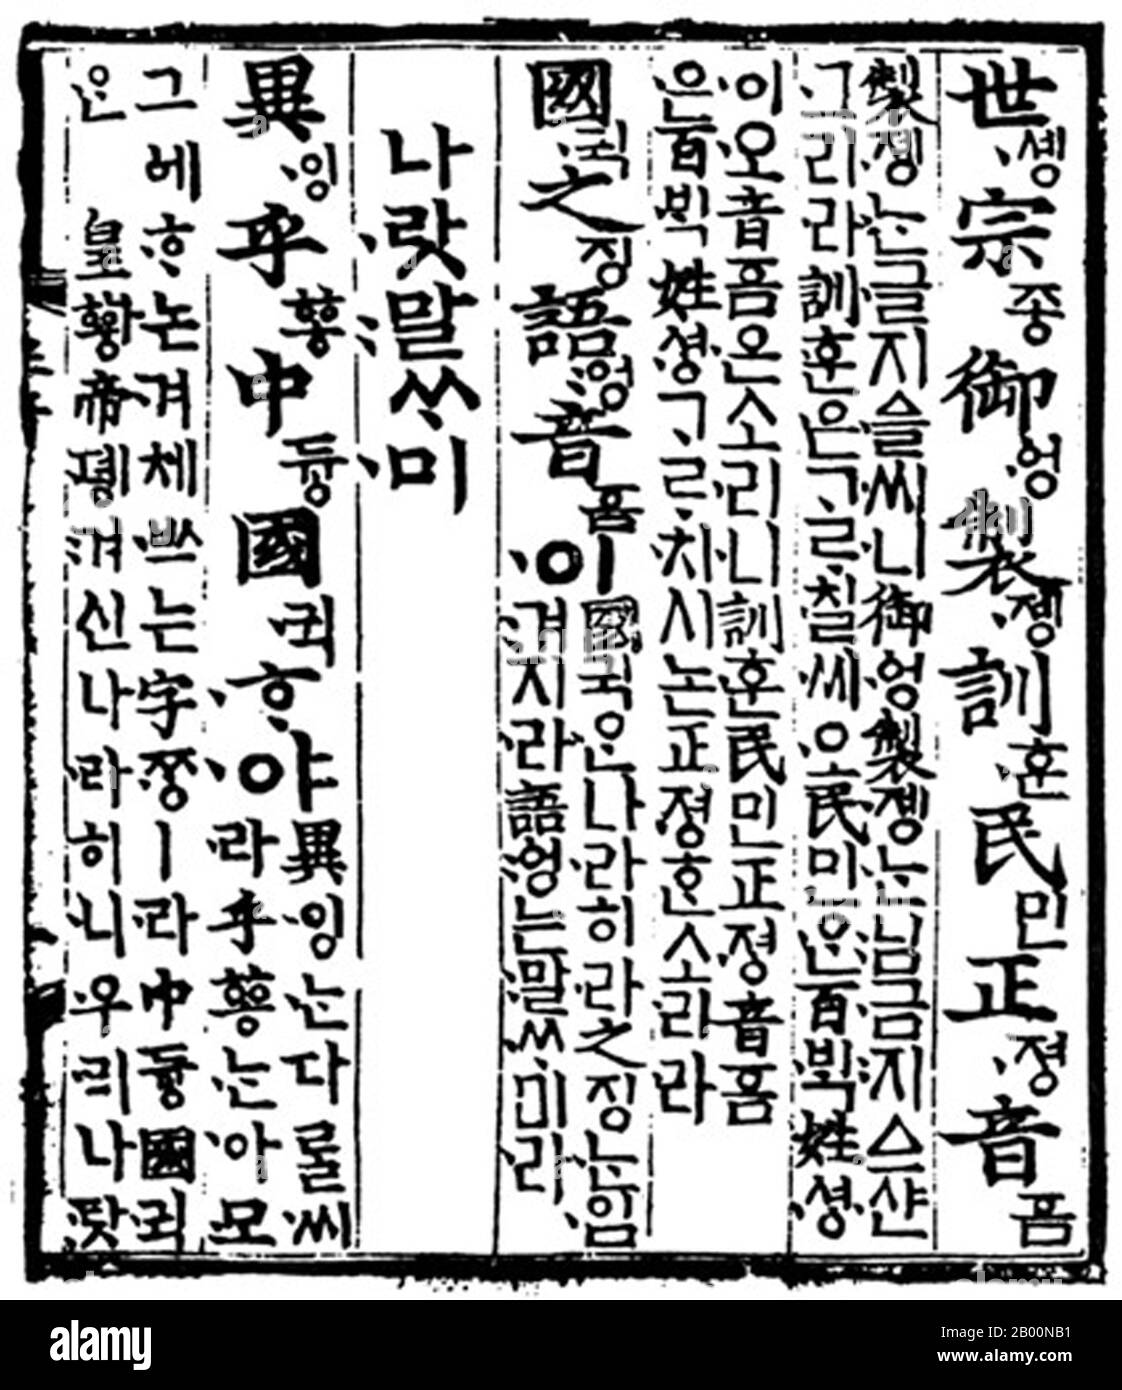 File:Seoul-Korean-Hangul-Insadong-Papers.jpg - Wikipedia